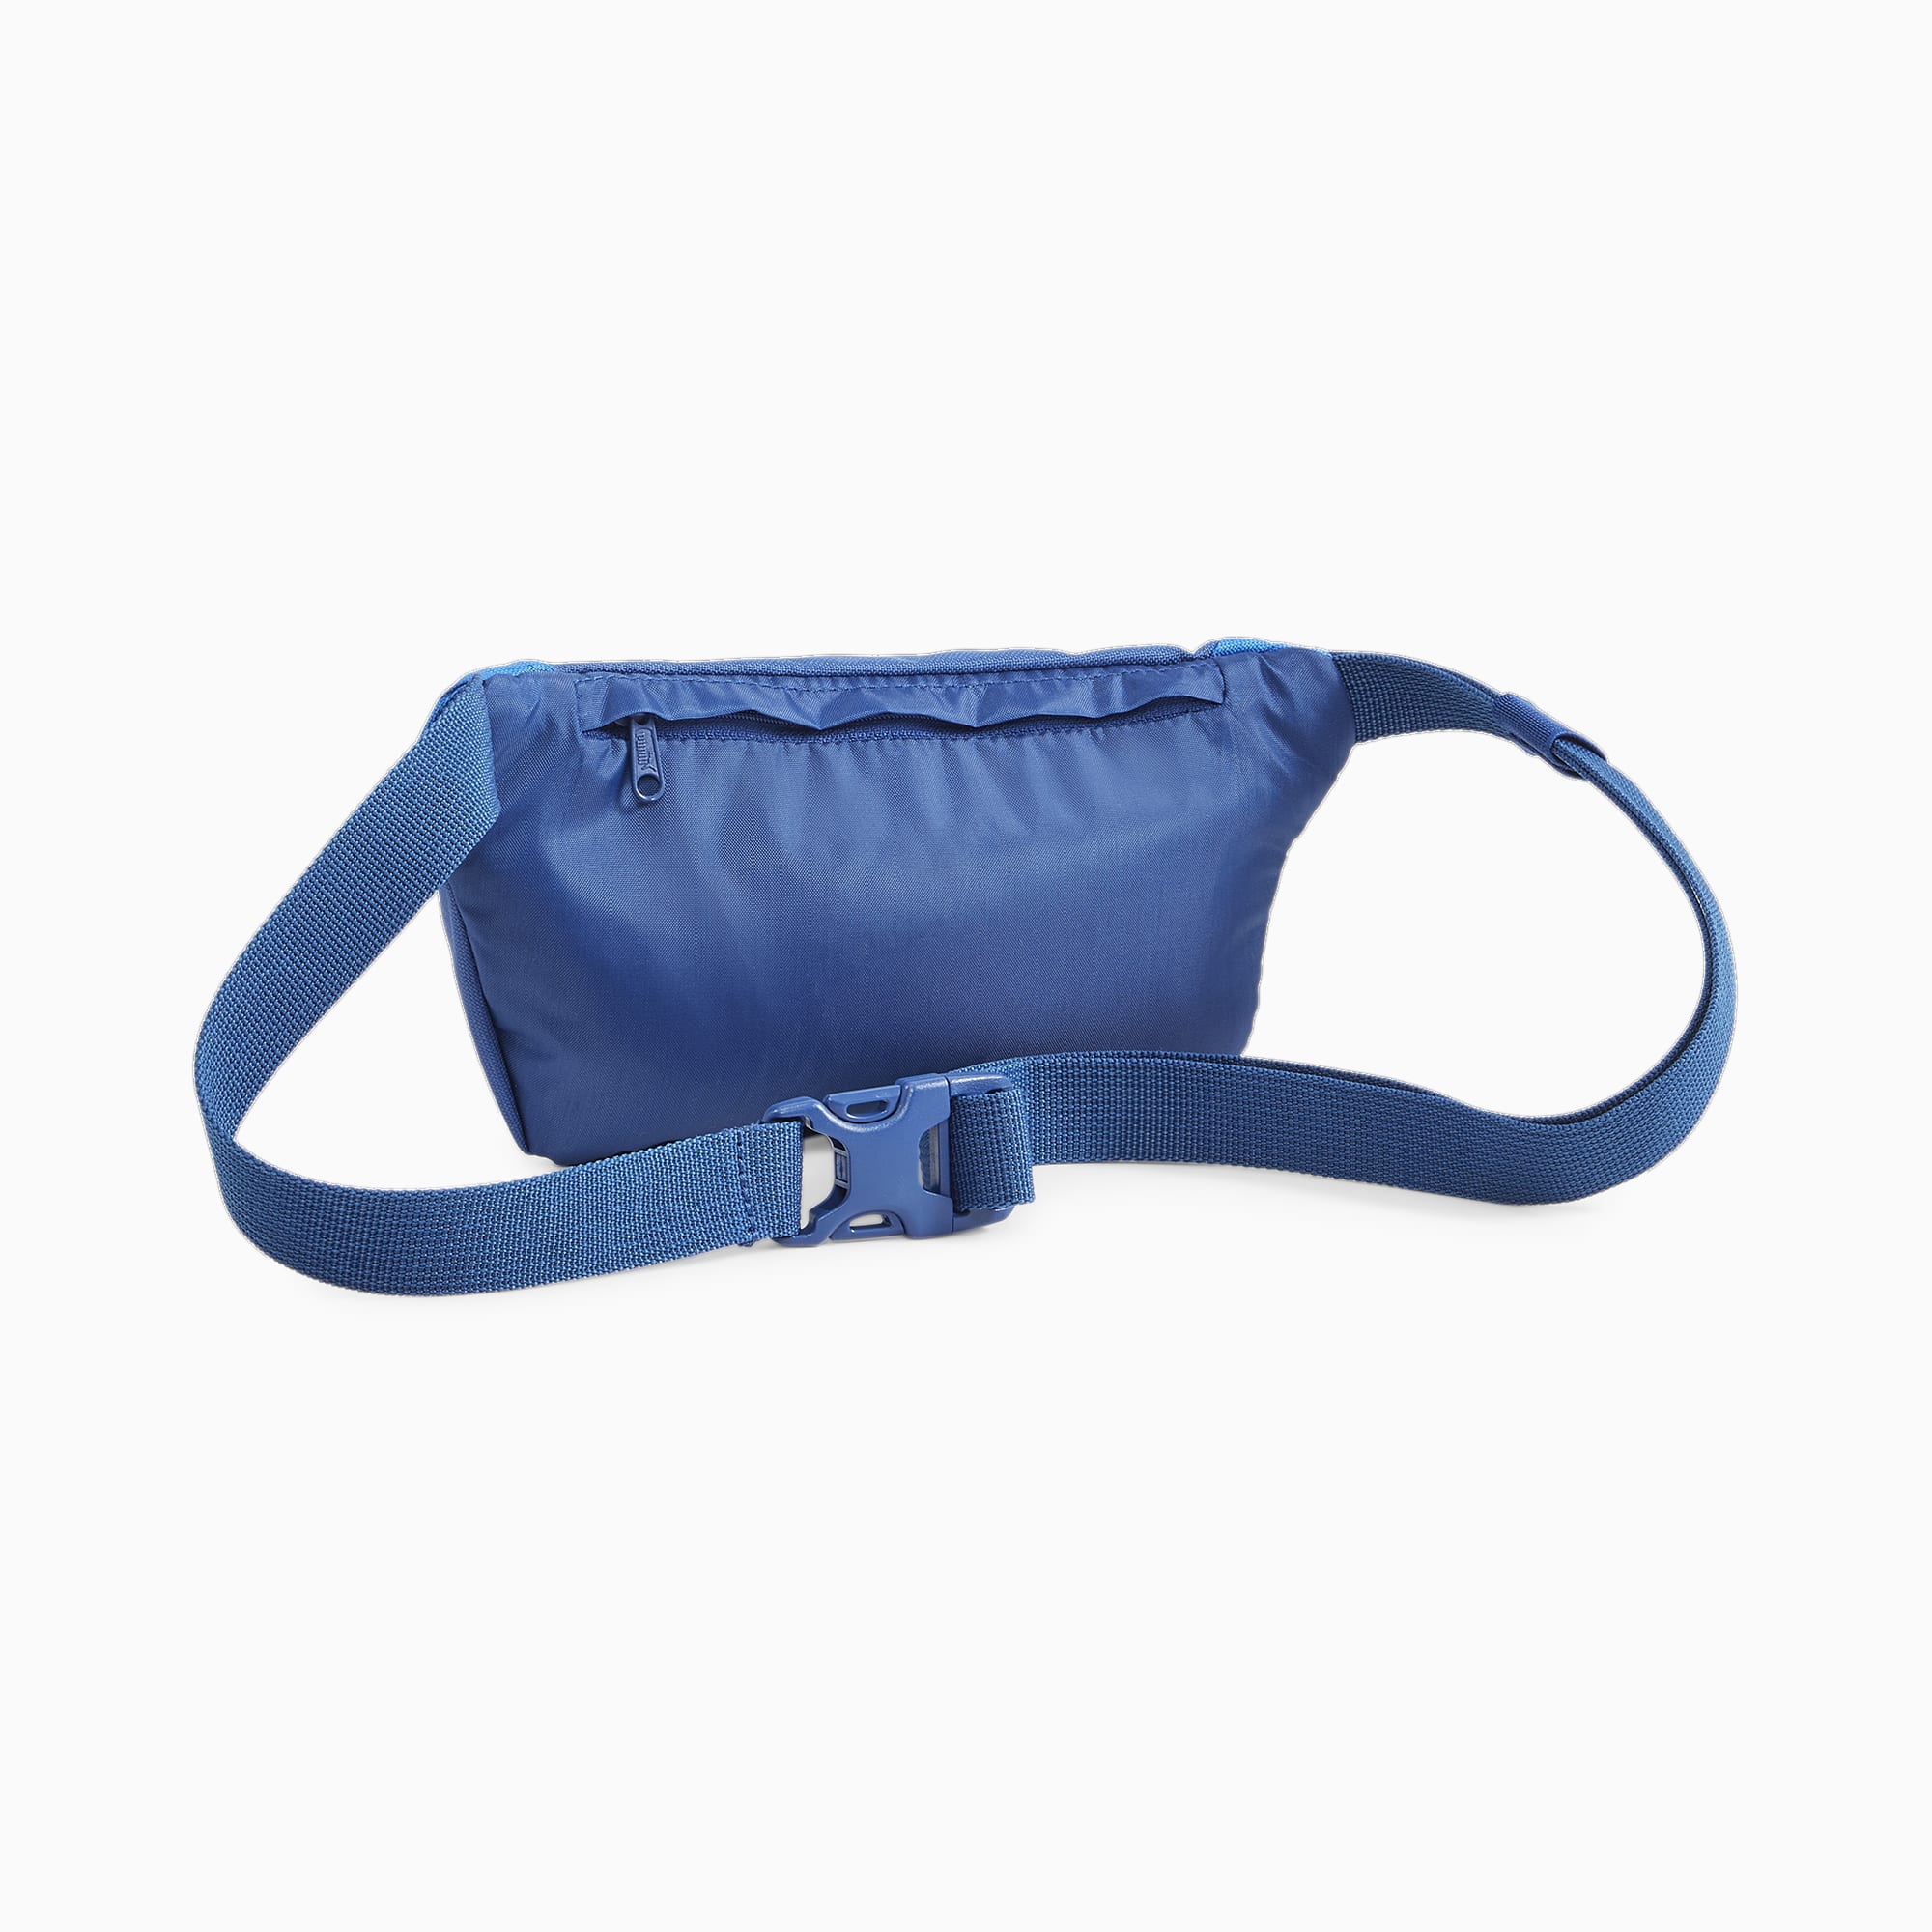 Women's PUMA Olympique De Marseille Fan Football Waist Bag, Royal Blue, Accessories